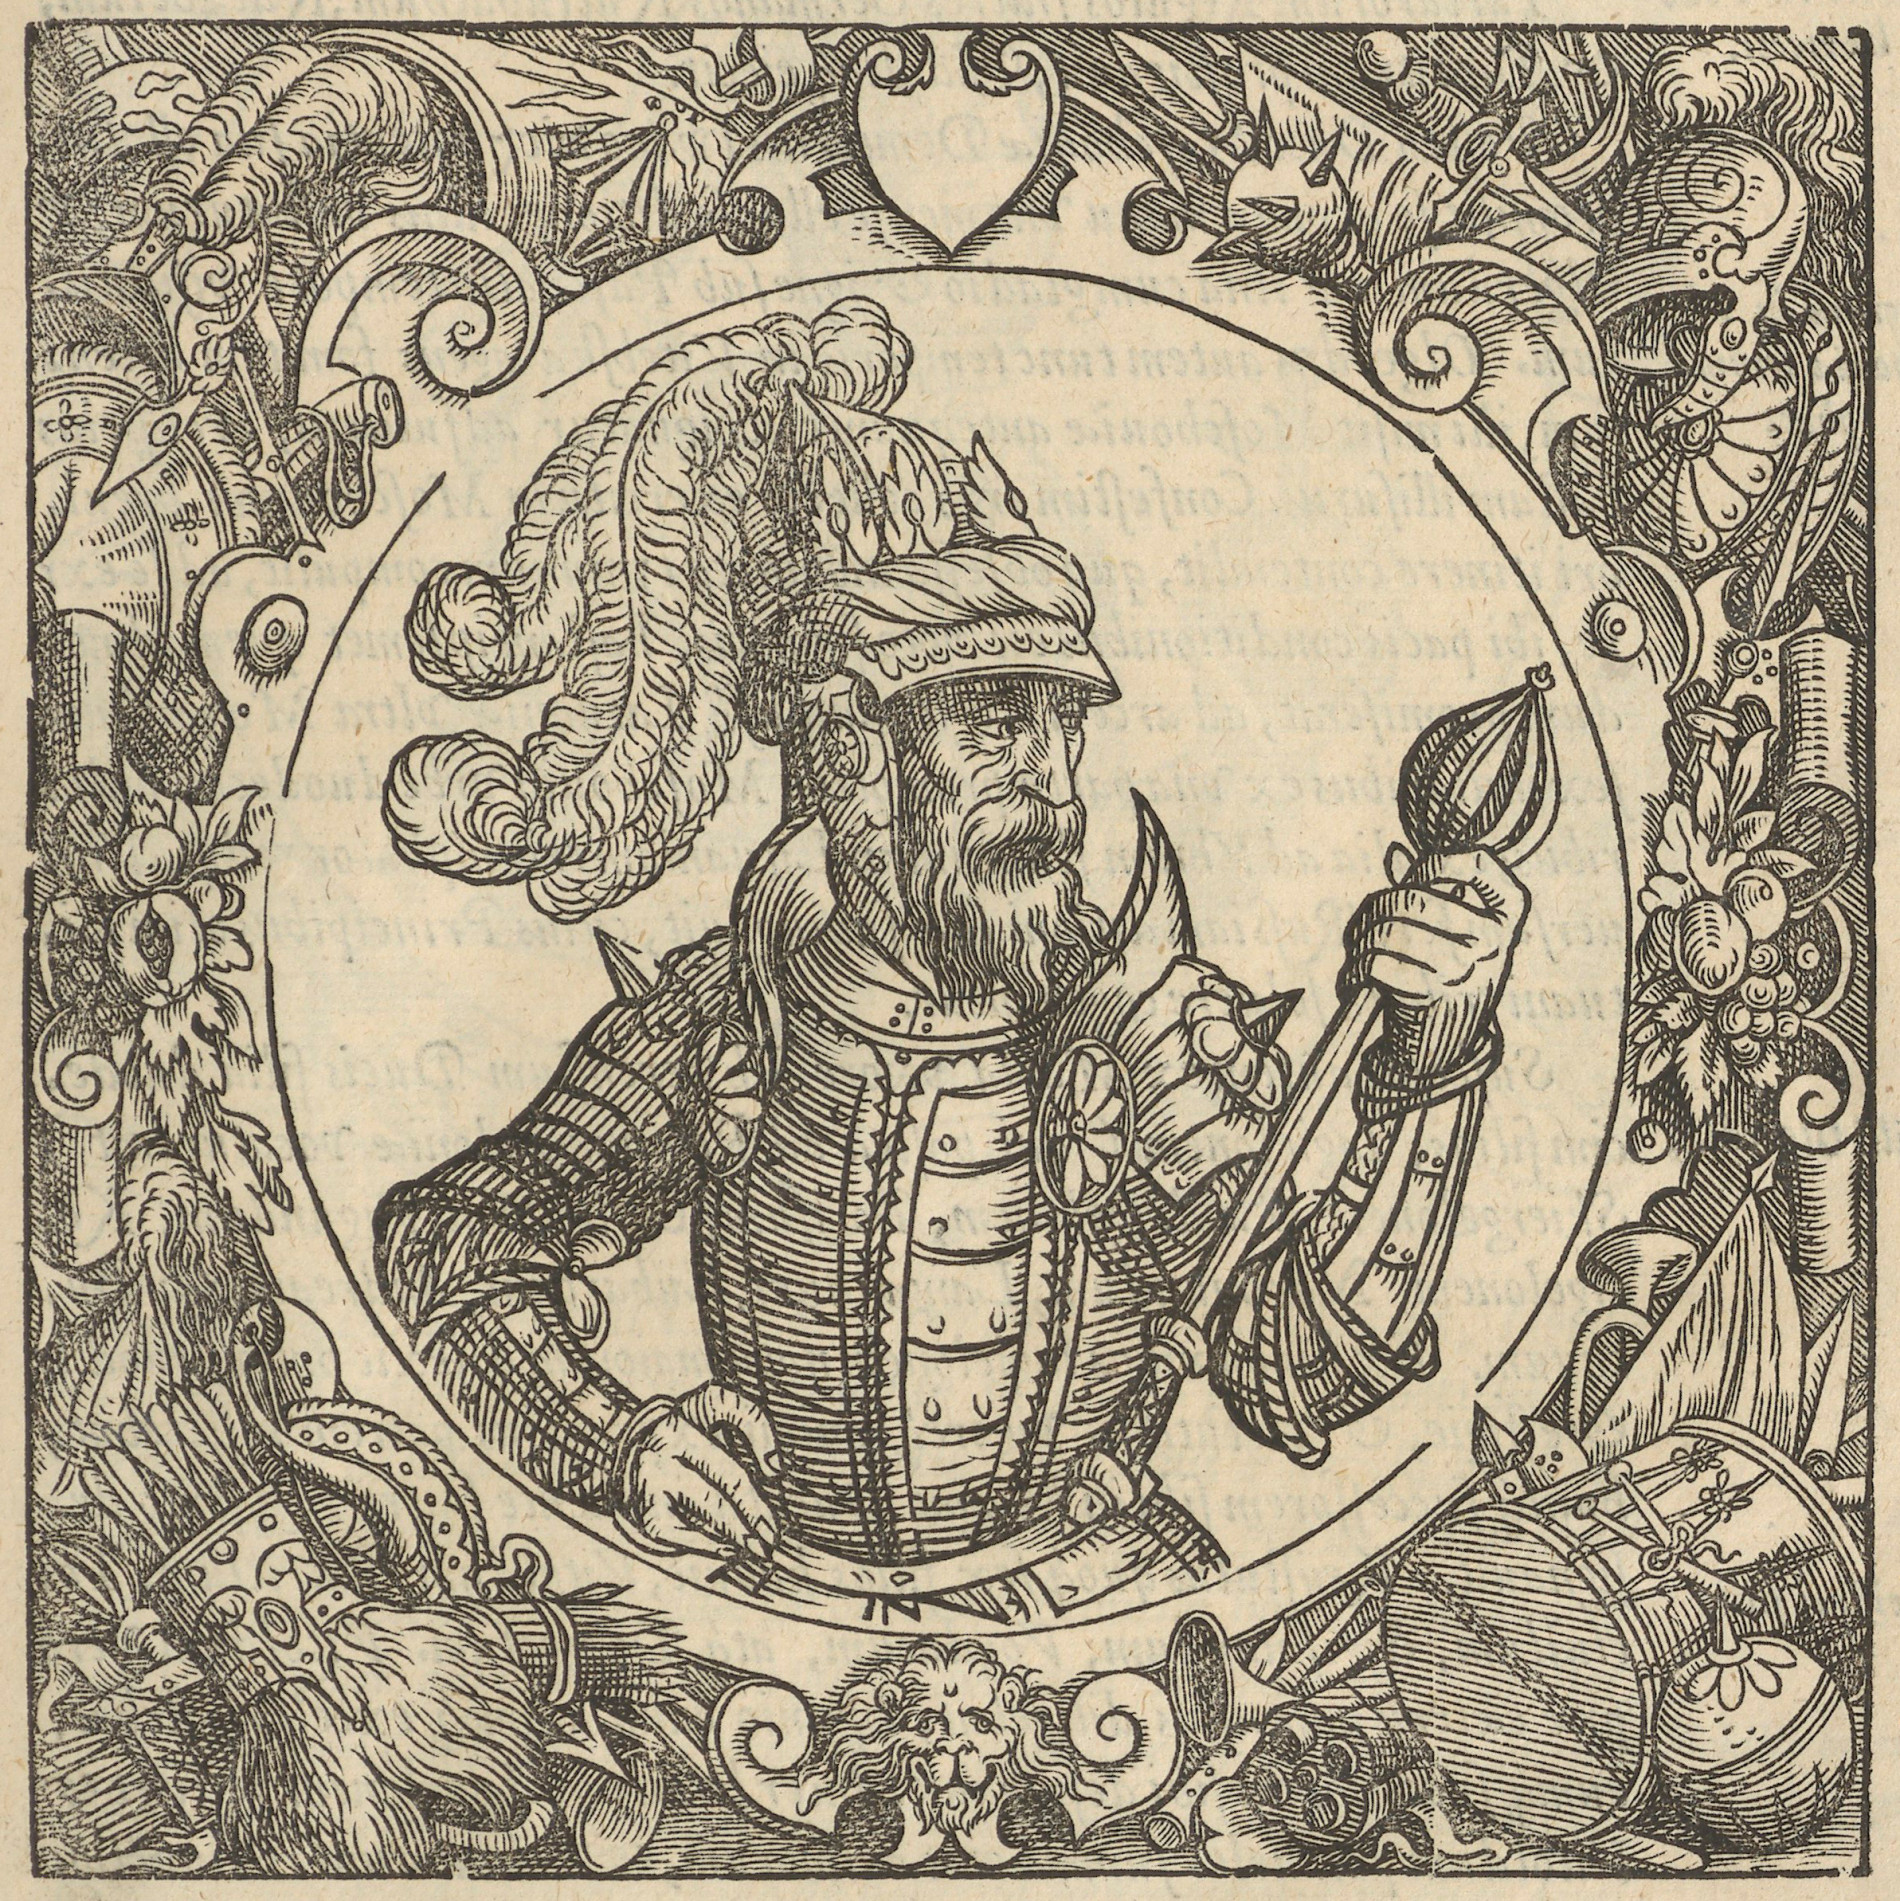 Портрет Ольгерда. Гравюра из «Описания Европейской Сарматии», 1578 г.